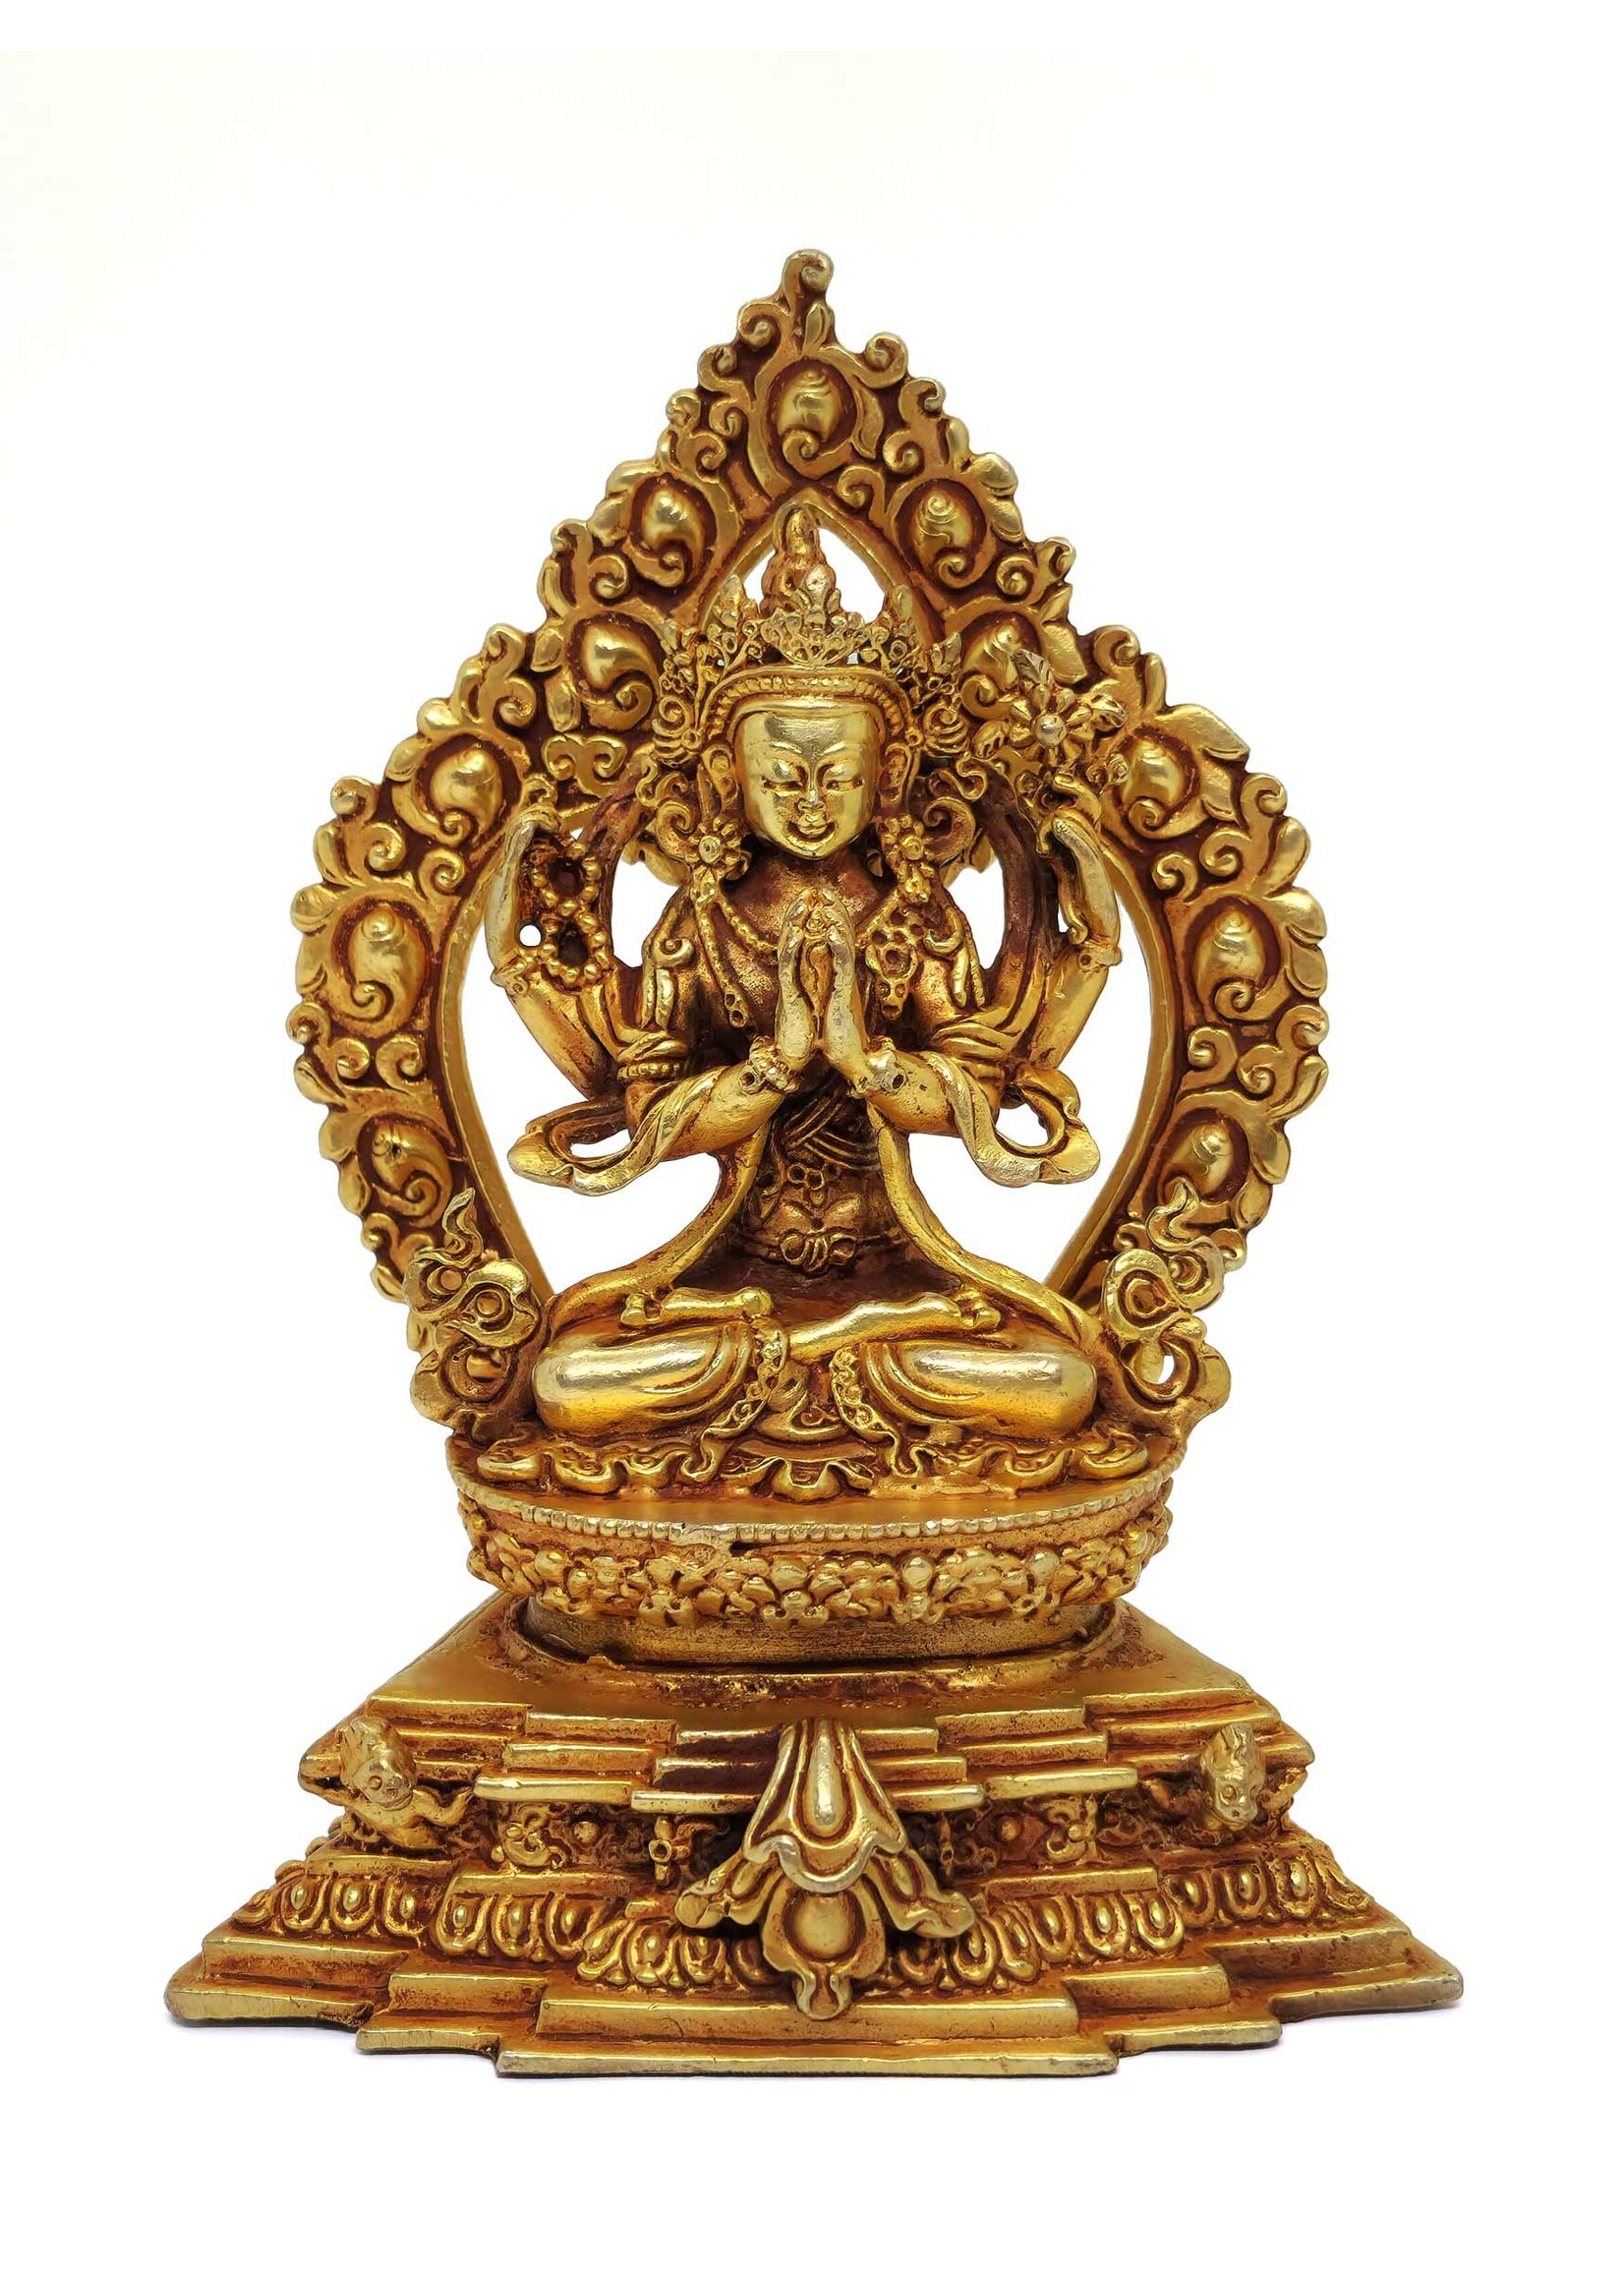 Statua di Chenrezig (Avalokiteshvara) con trono